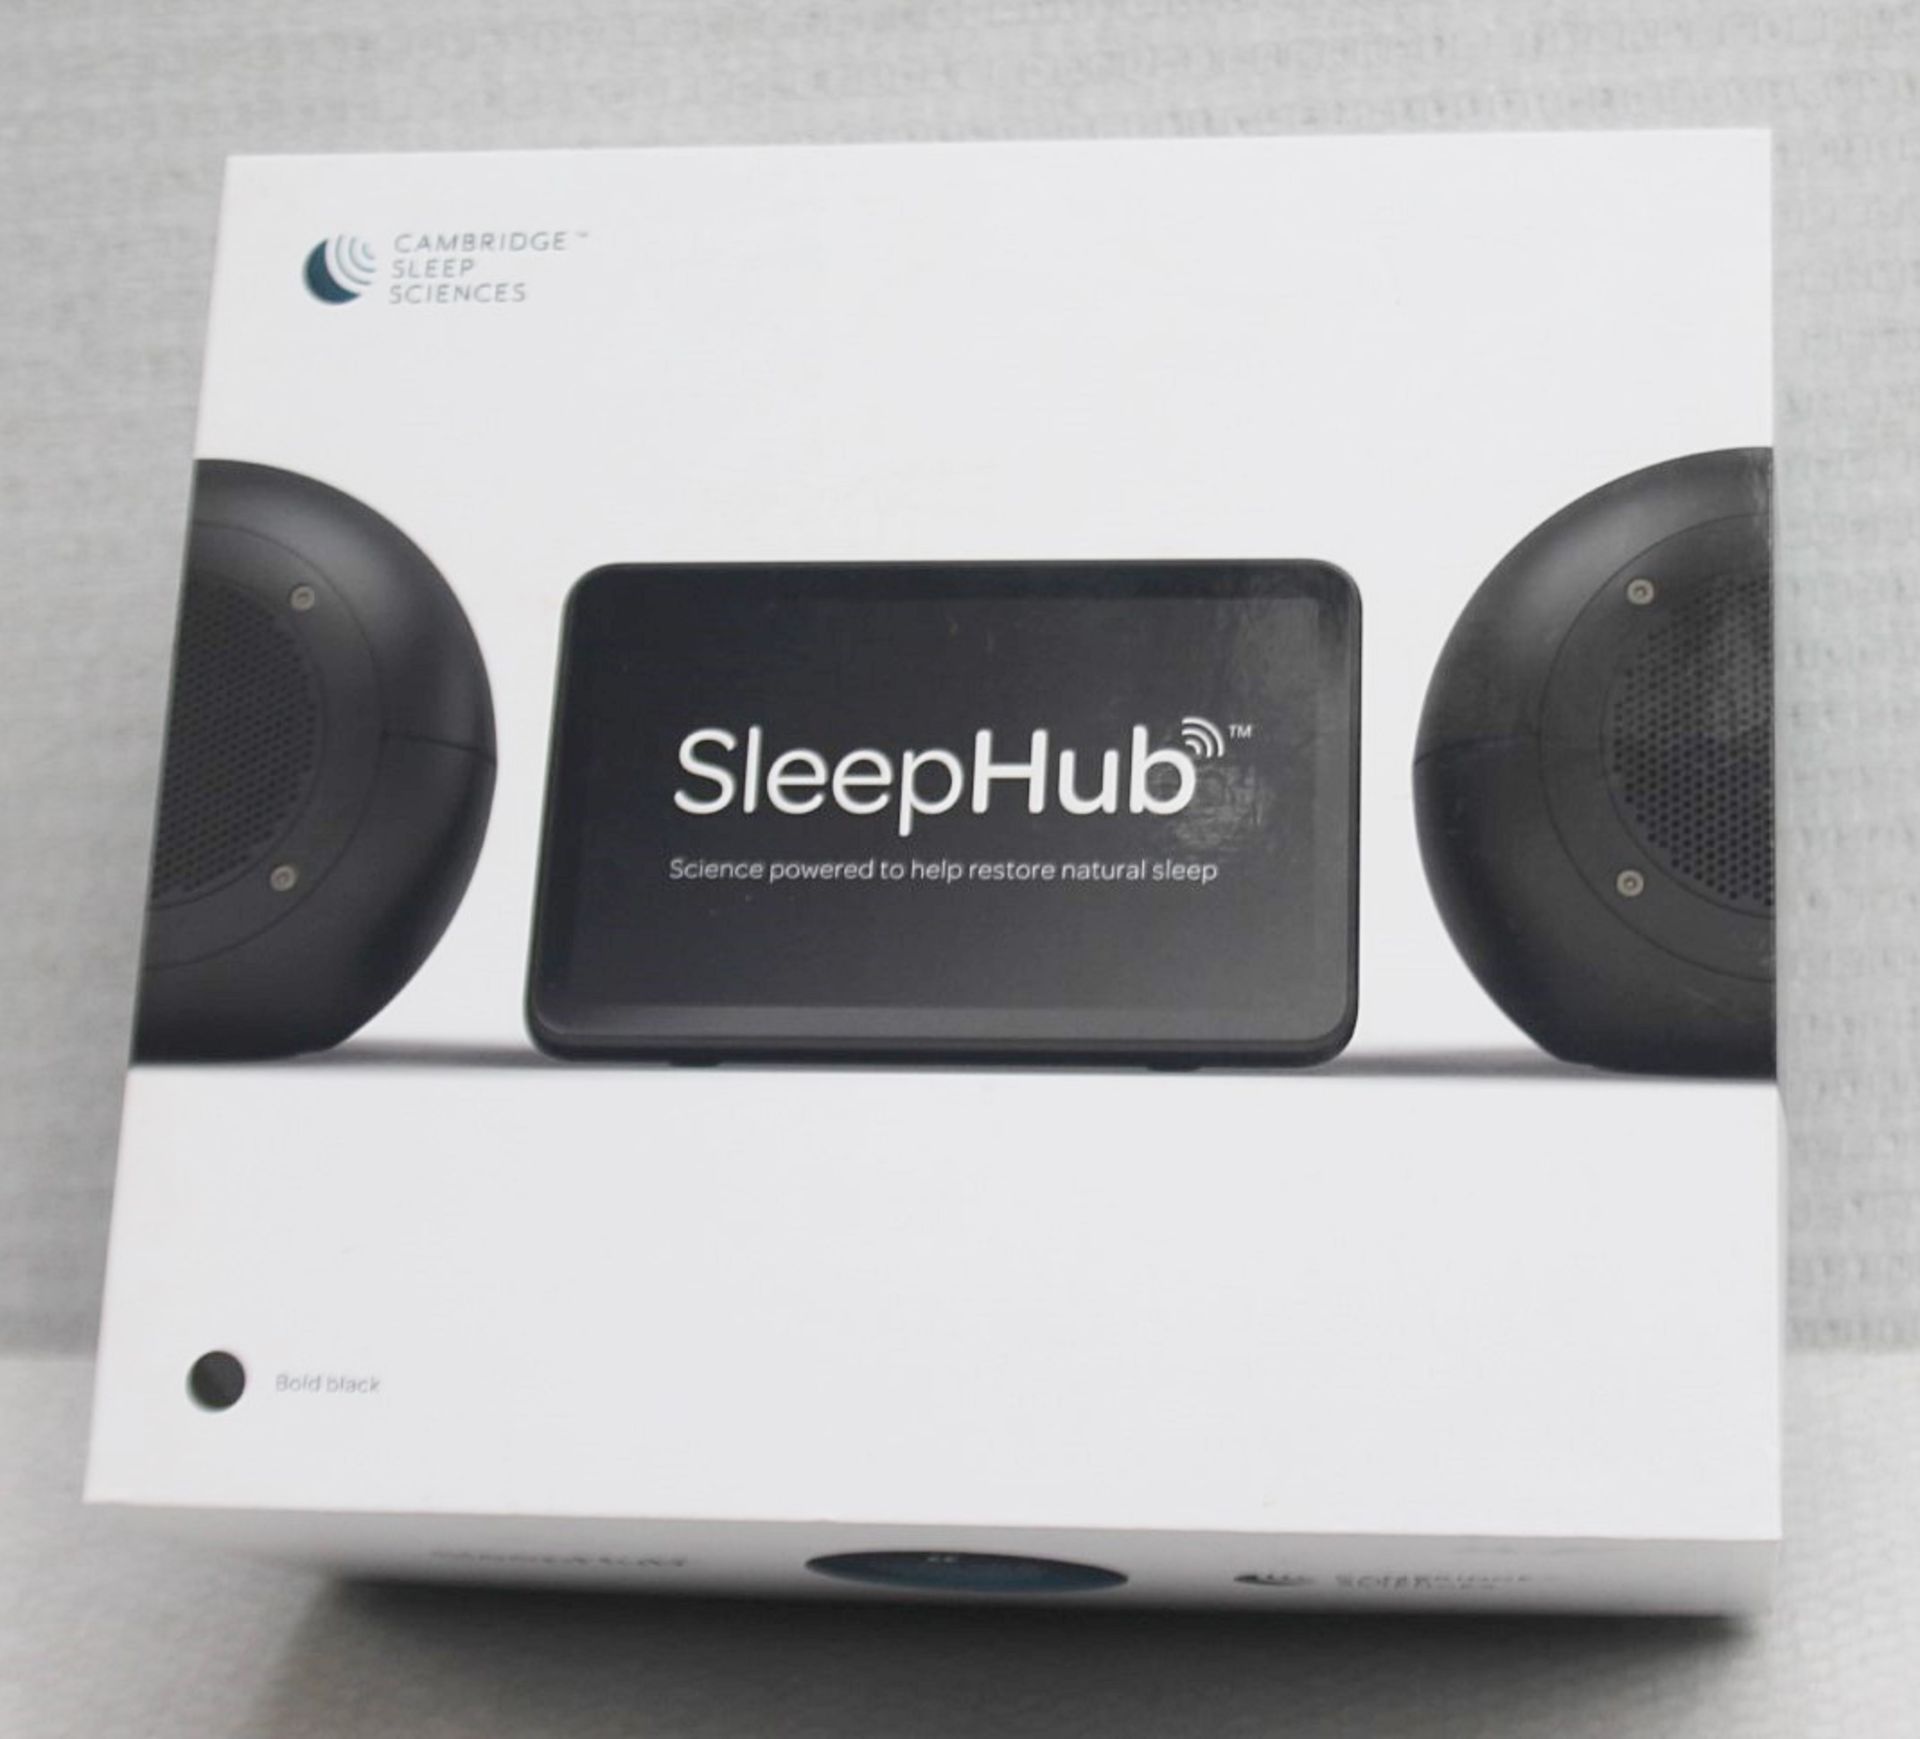 1 x CAMBRIDGE SCIENCES 'Sleephub Home' Bedside Sleep-Aid Unit - Unused Boxed Stock - RRP £479.00 - Image 6 of 11